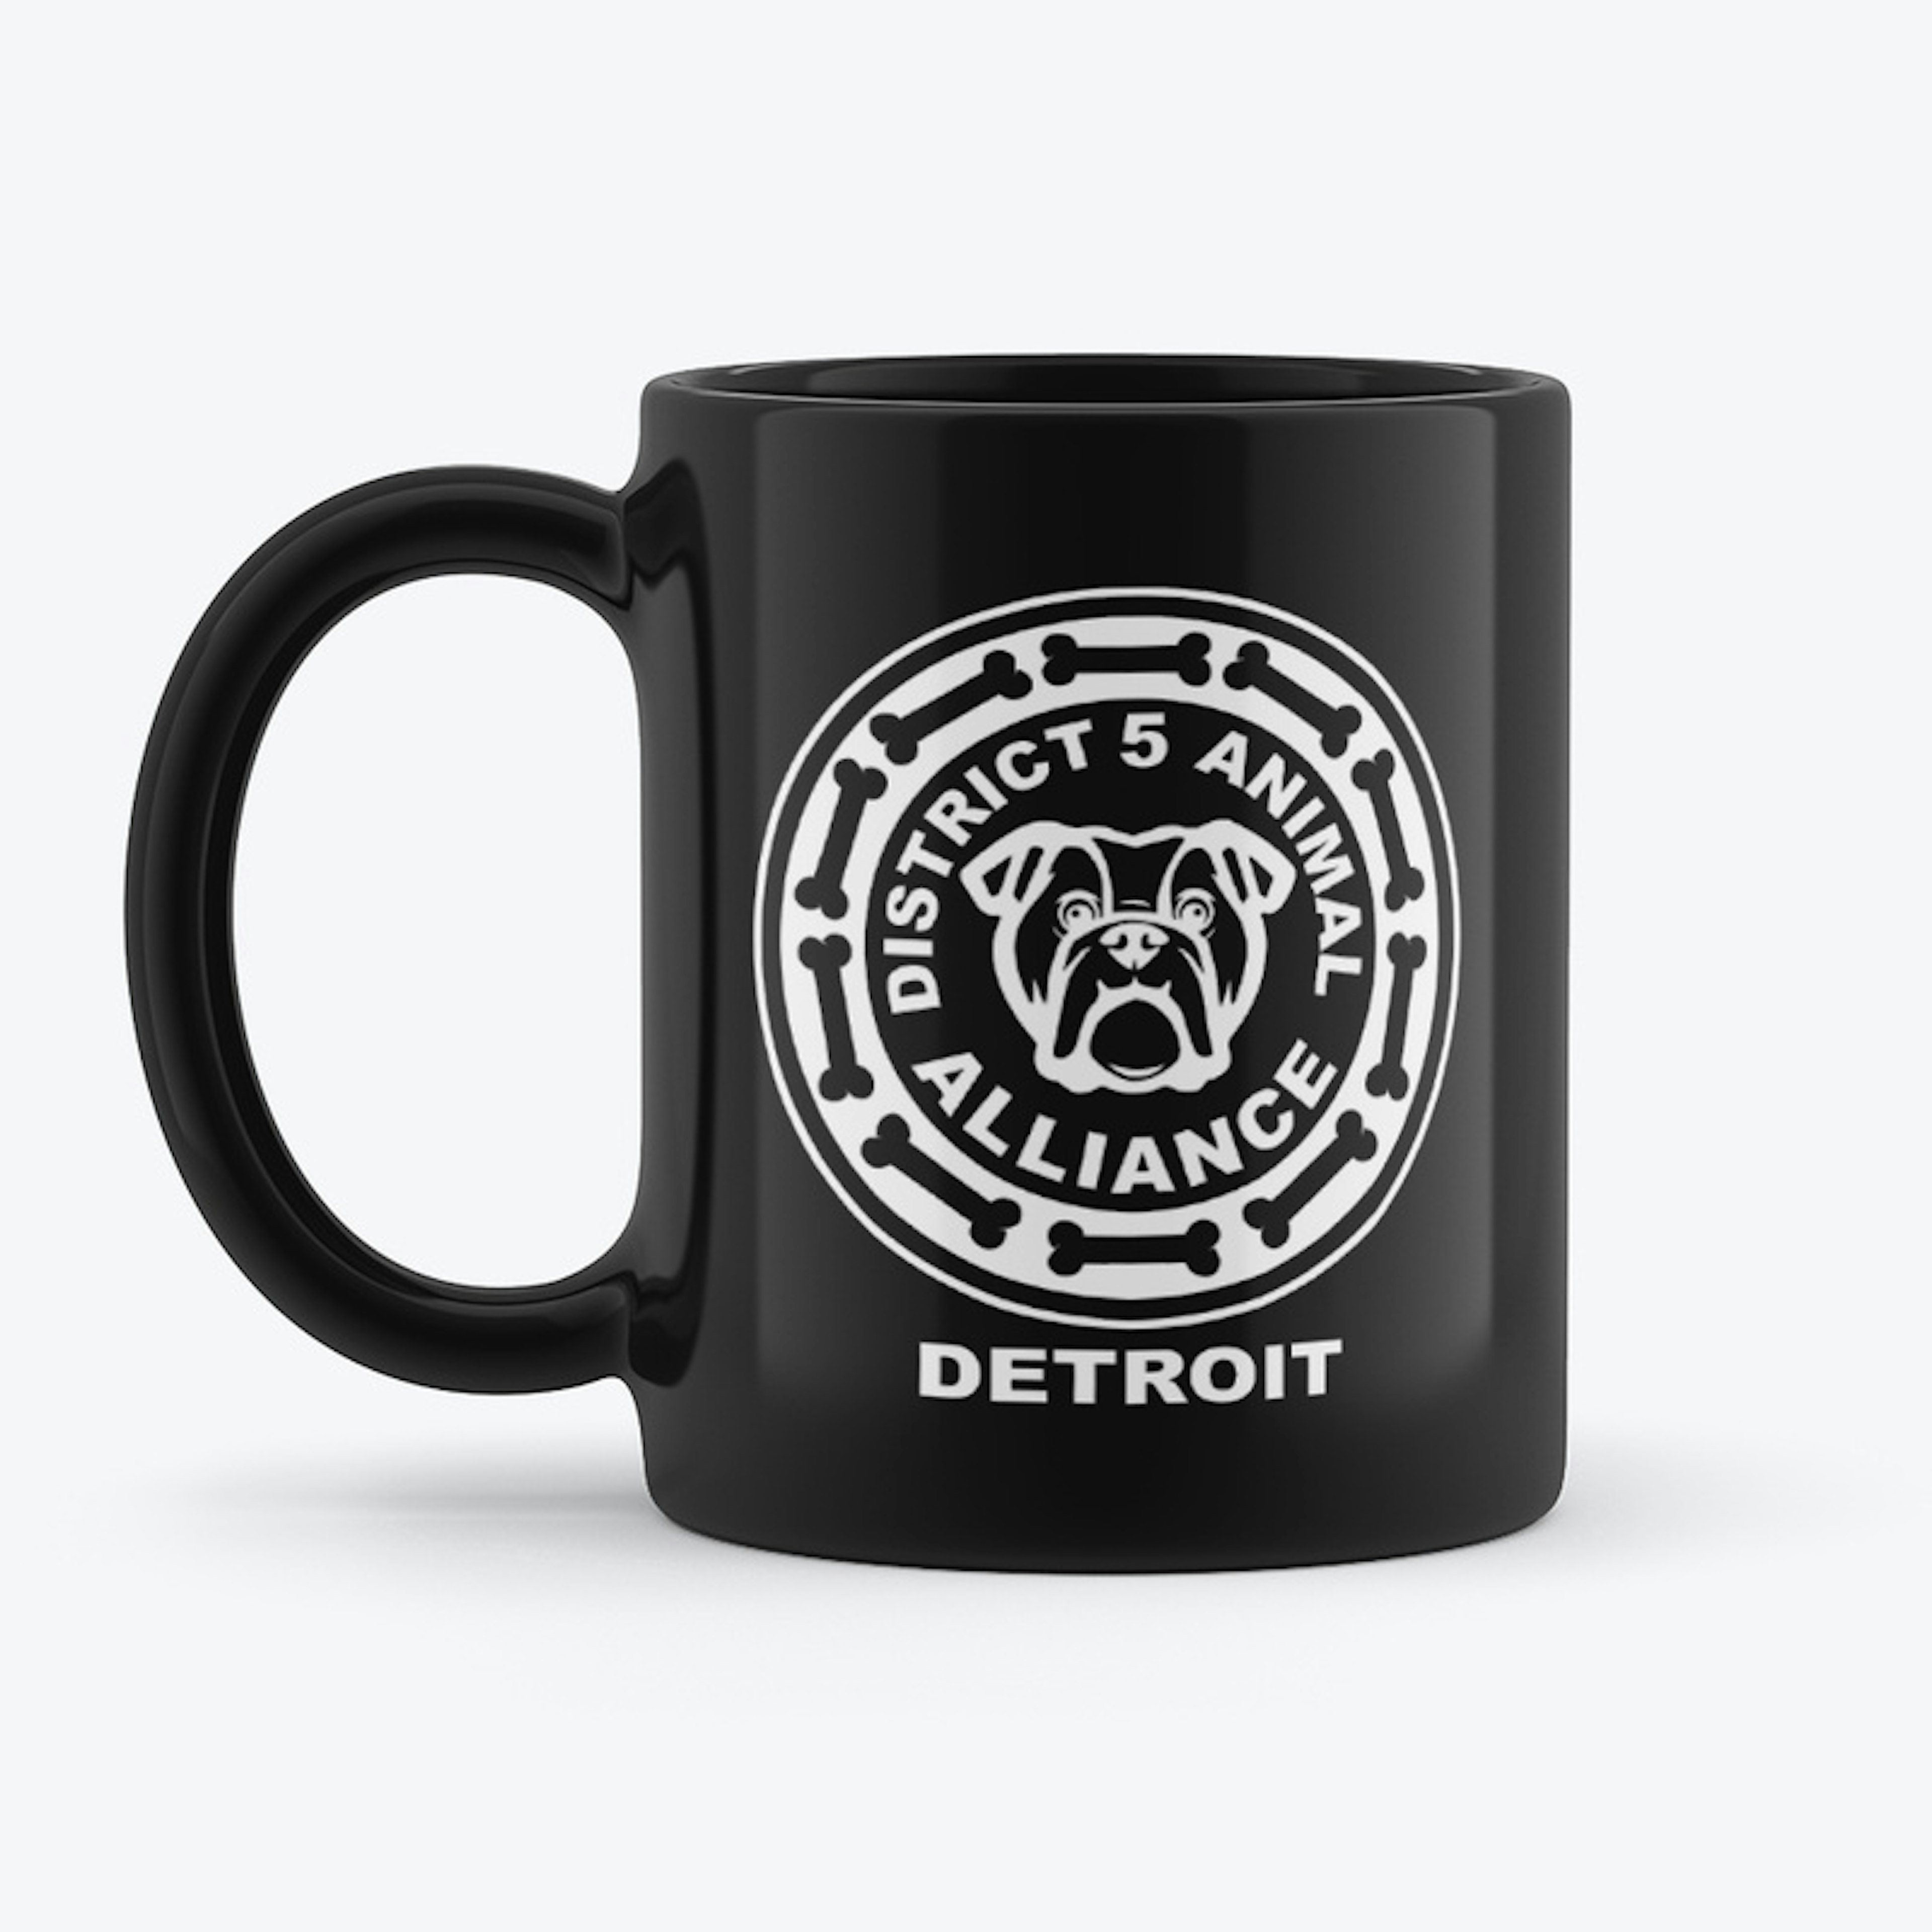 District 5 Animal Alliance Detroit Merch